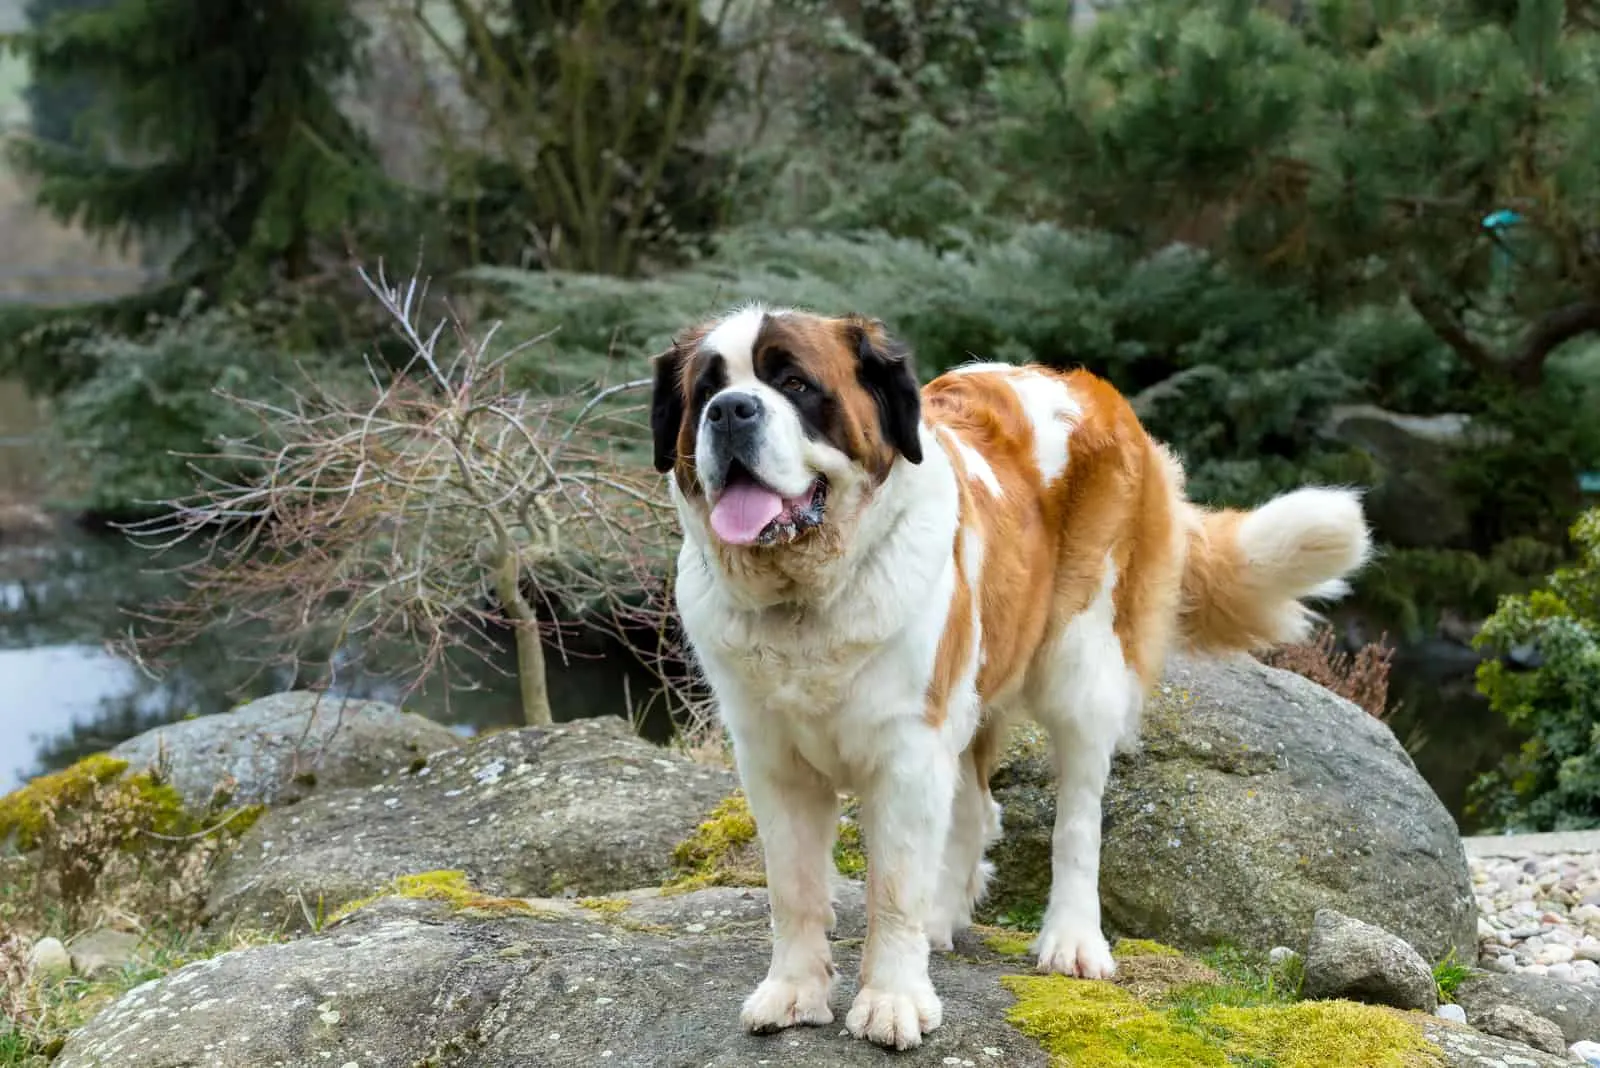 Saint Bernard dog stands on a rock in nature